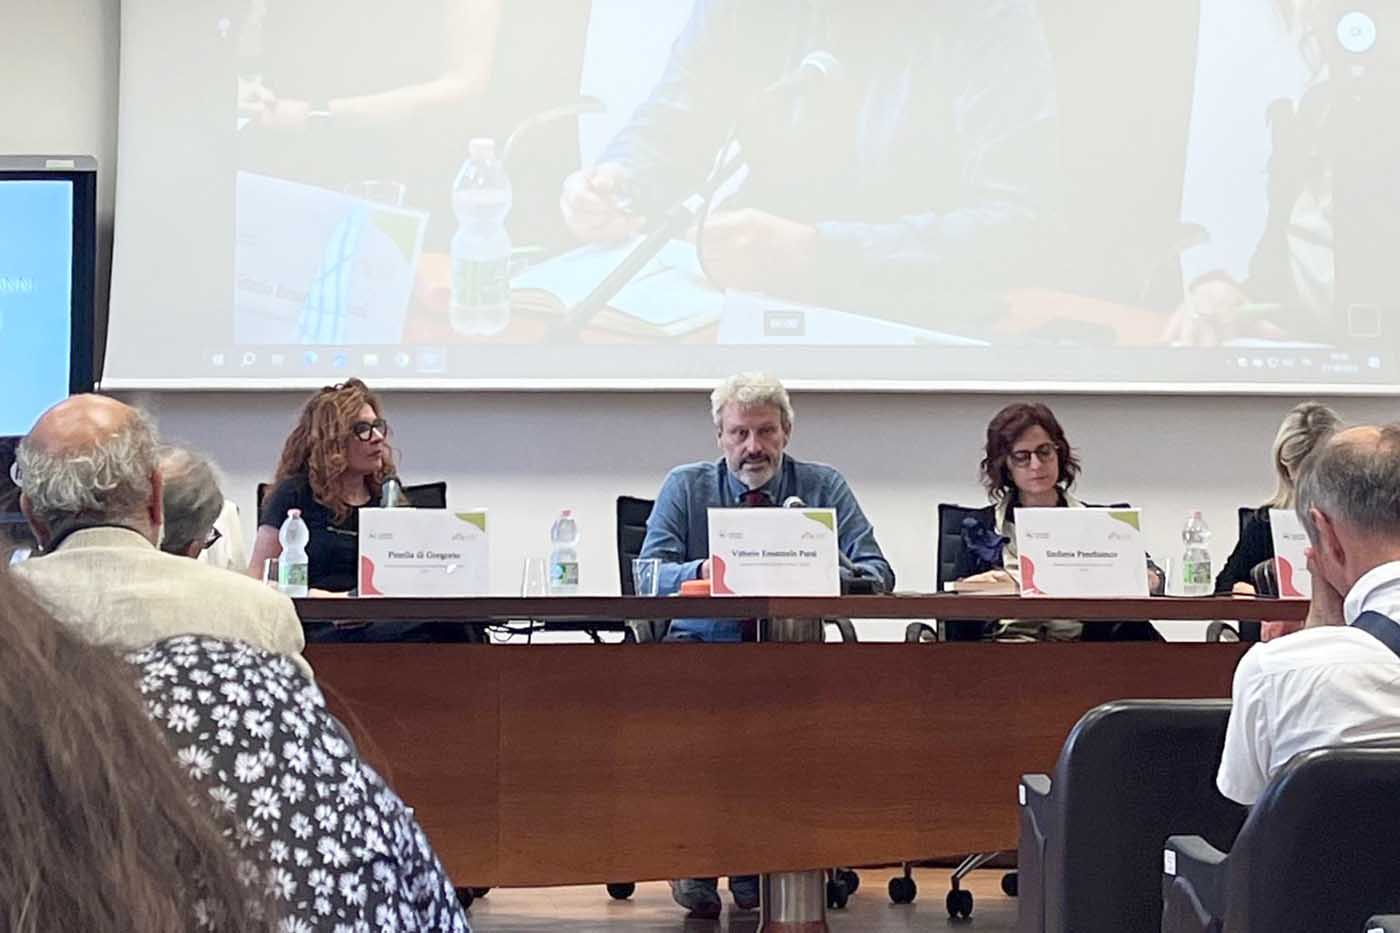 Un momento dell'intervento di Vittorio Emanuele Parsi, ai suoi lati le docenti Pinella Di Gregorio e Stefania Panebianco